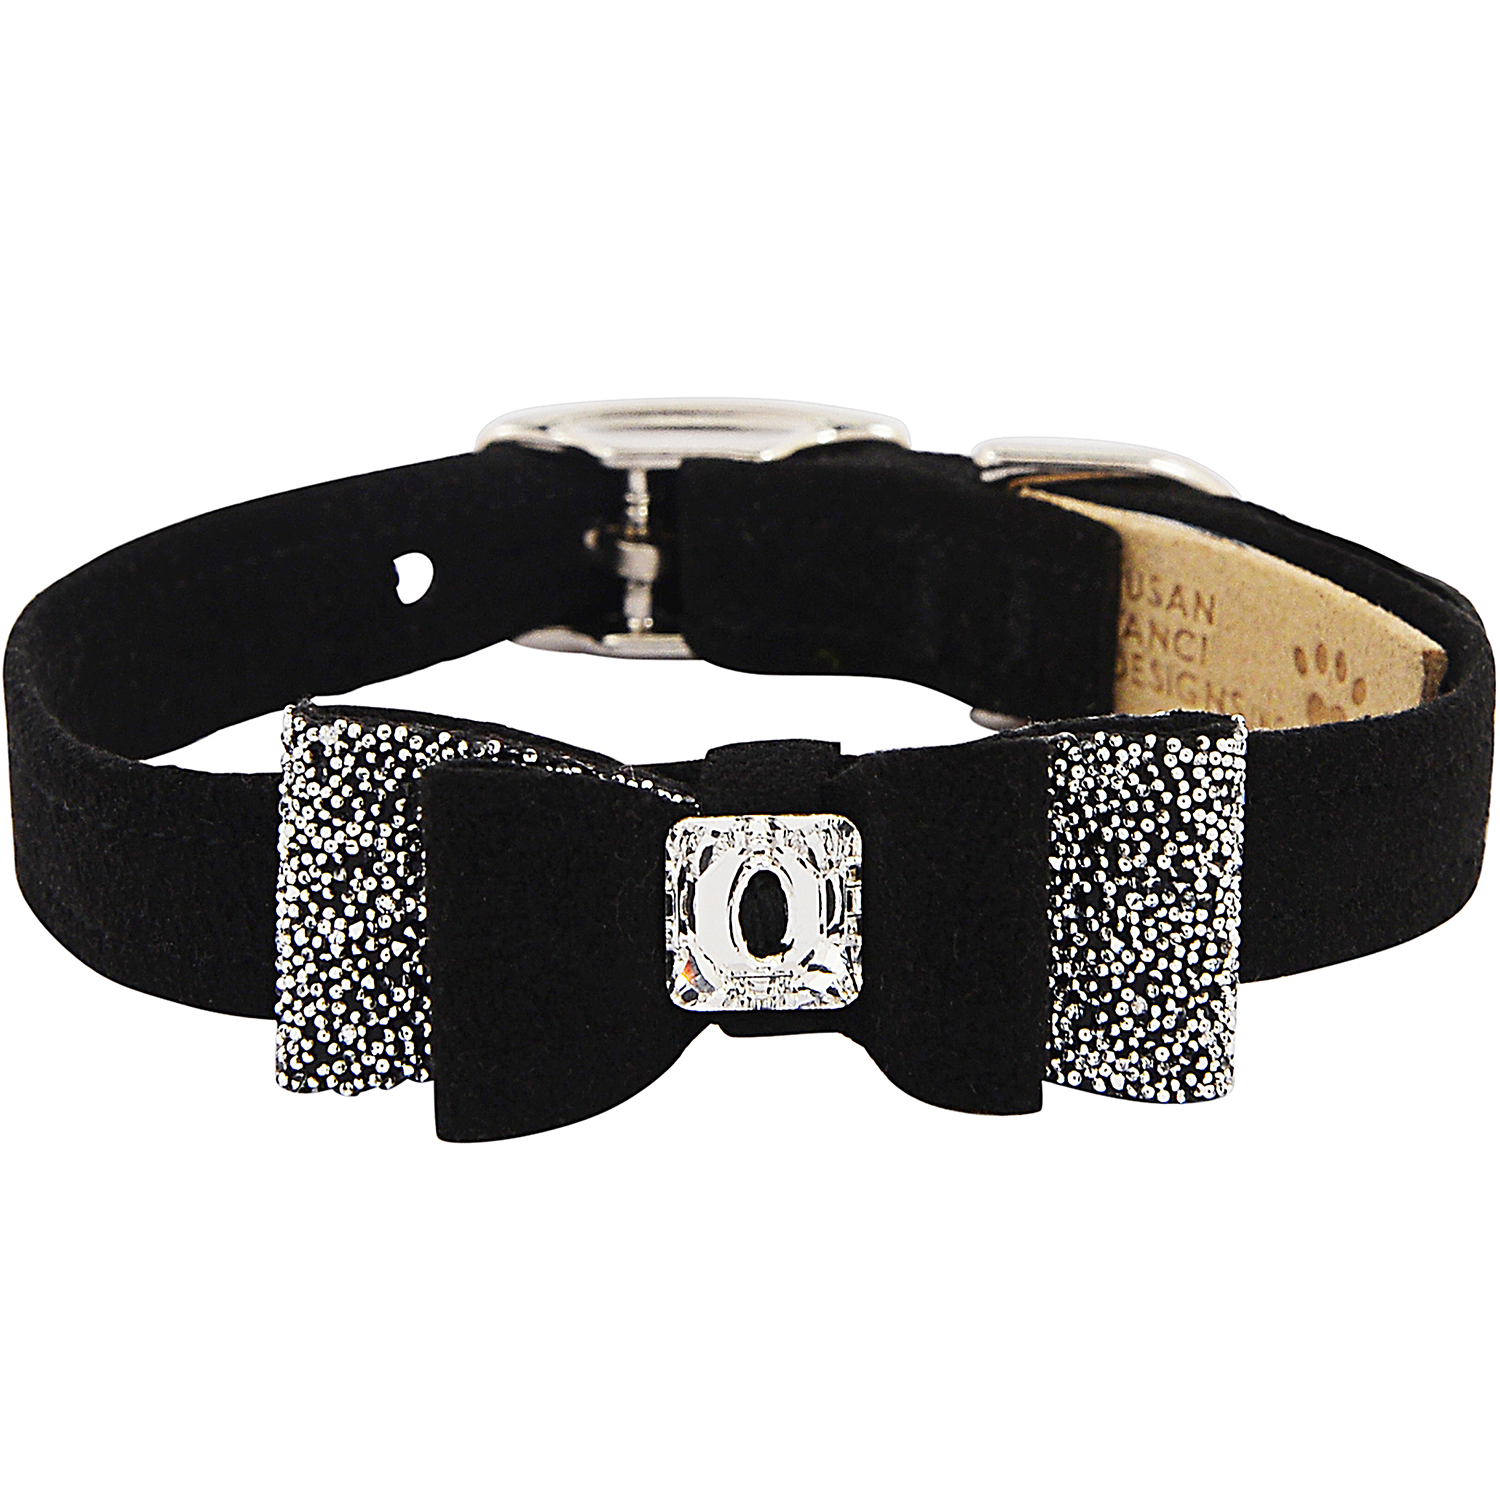 Pet Boutique - Dog Collar - Black Crystal Stellar Big Bow Pet Collar by Susan Lanci